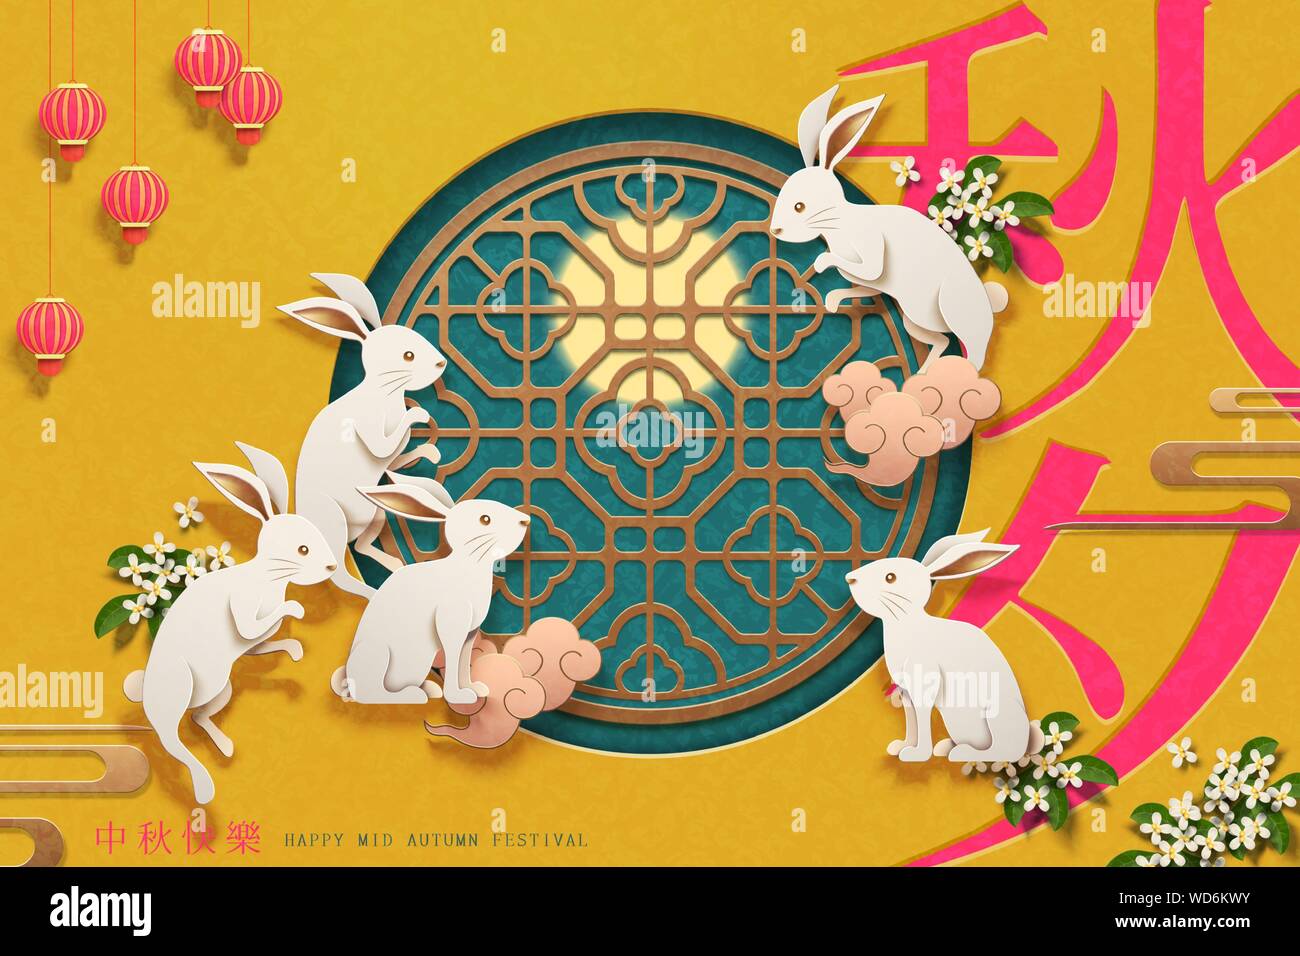 Paper art Kaninchen um die chinesische Fensterrahmen auf gelben Hintergrund, Moon Festival und einer Herbstnacht Wörter in chinesischen Schriftzeichen geschrieben Stock Vektor